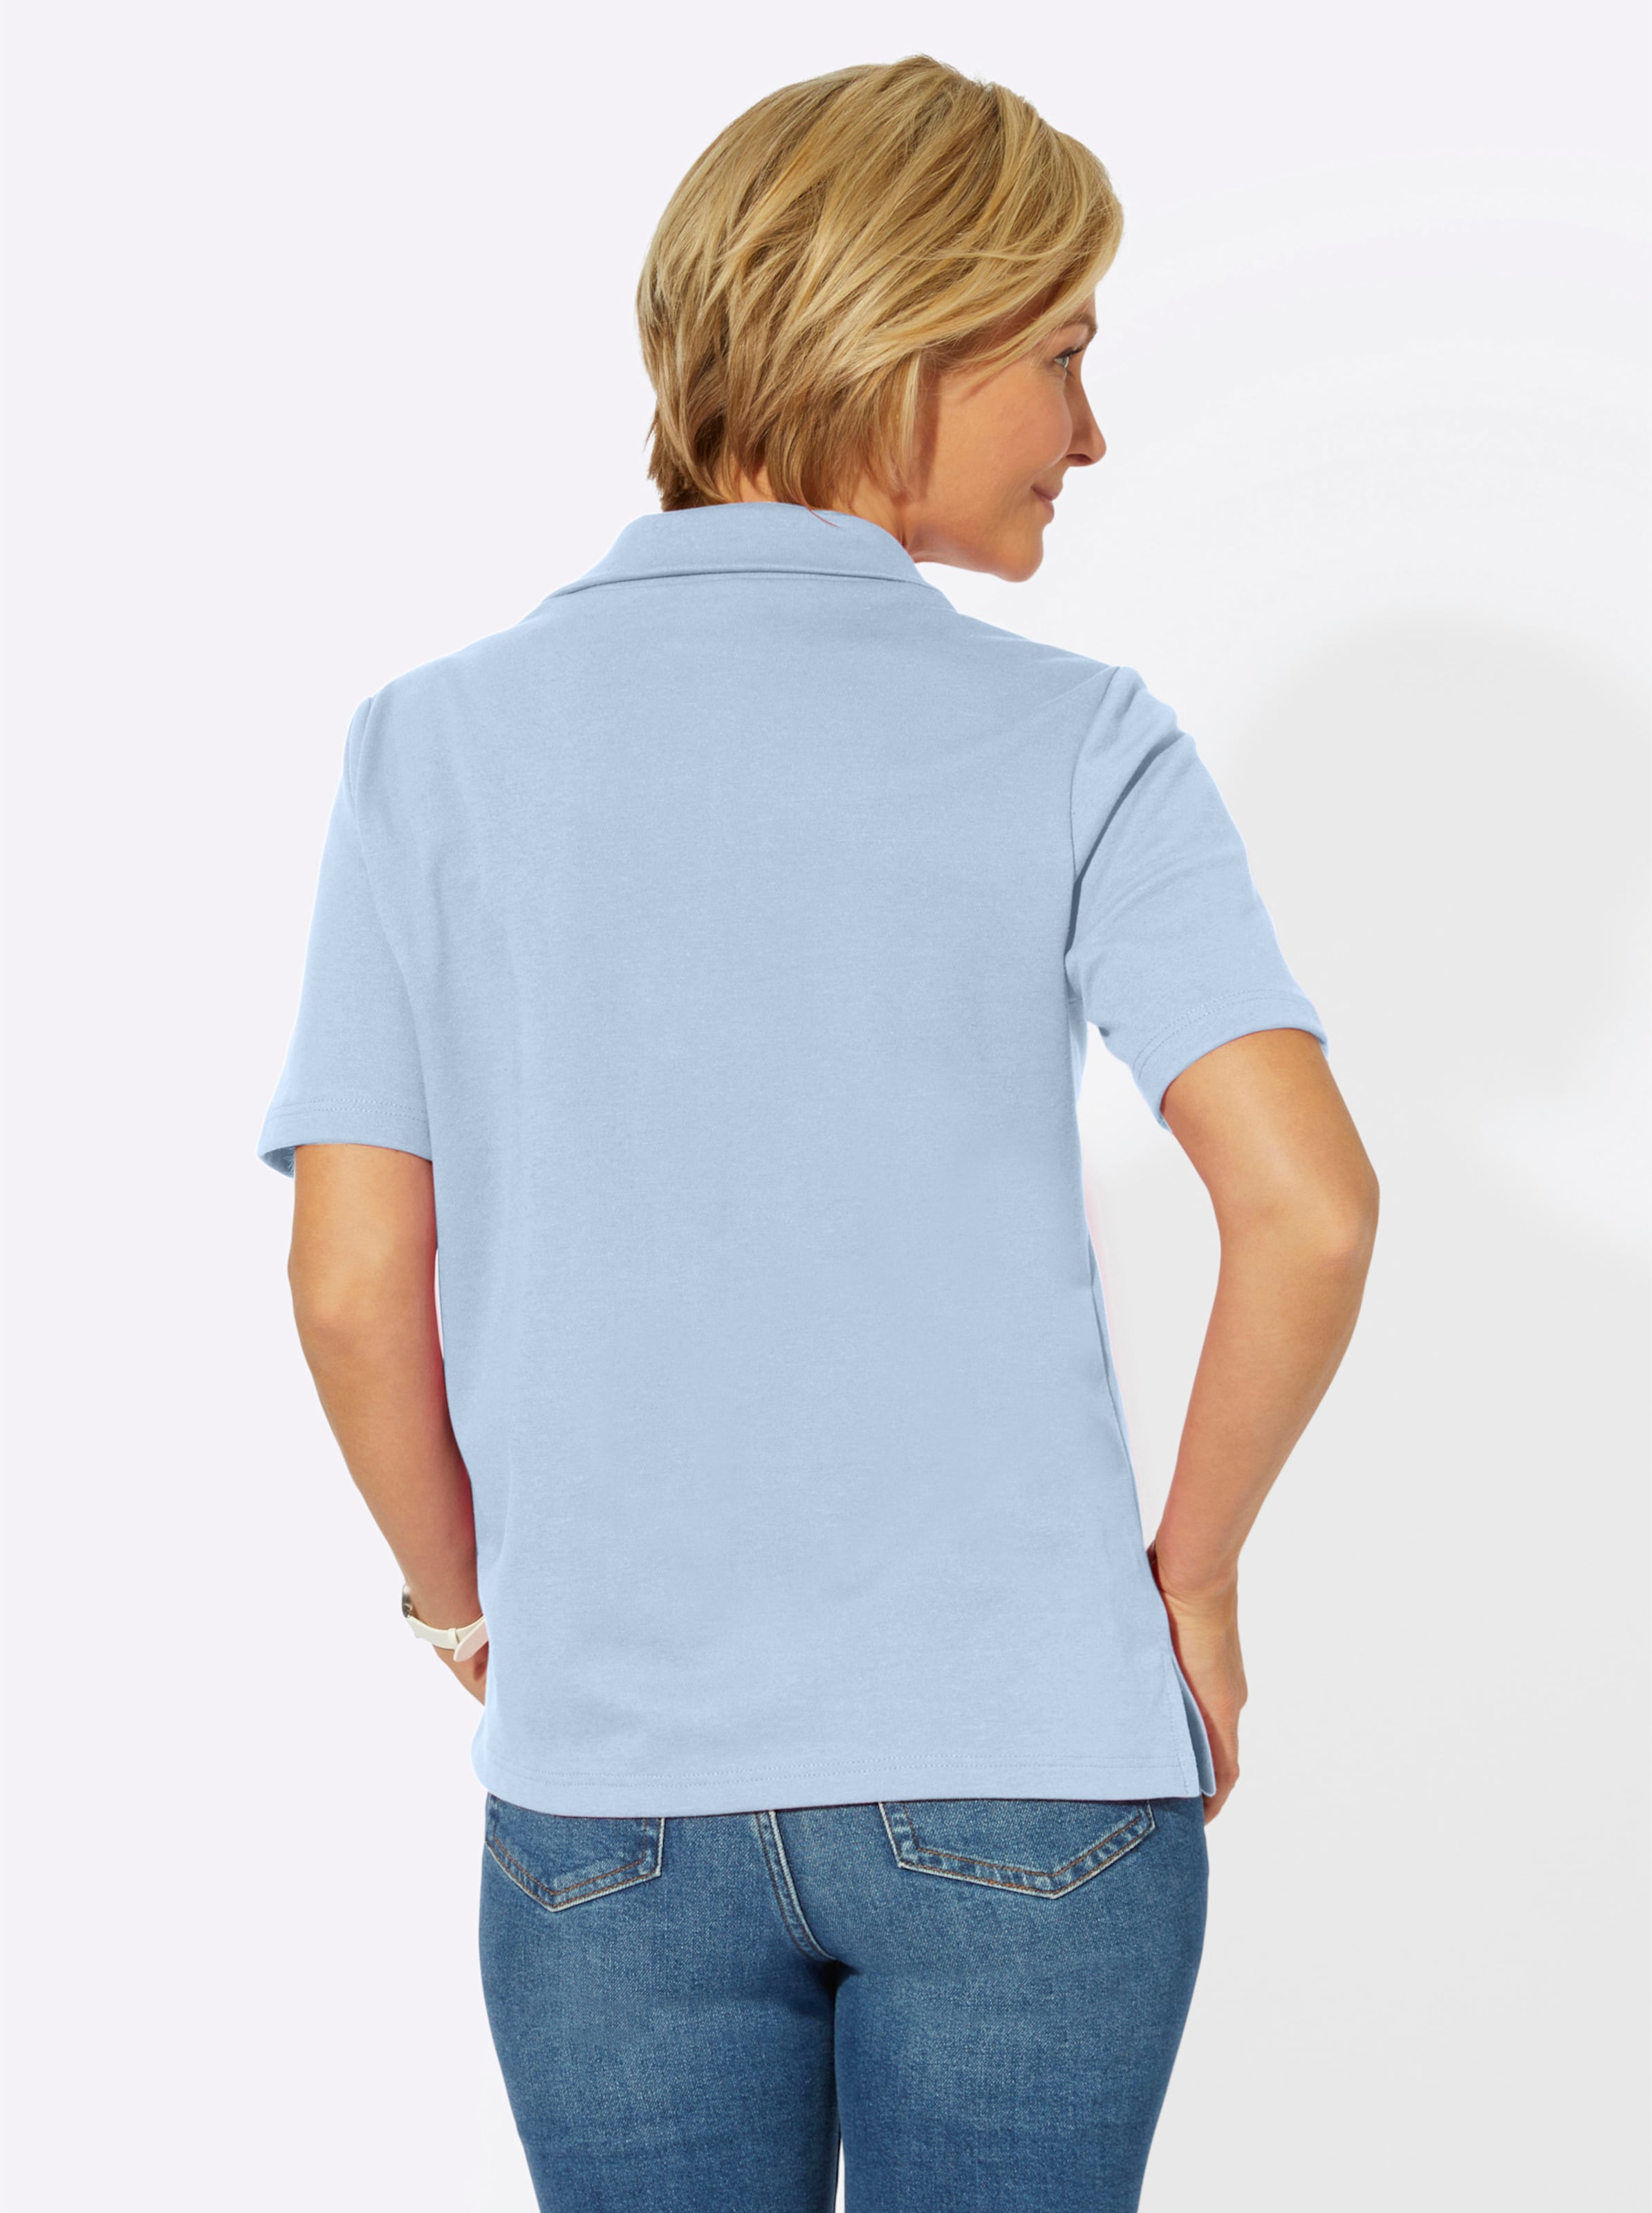 sung günstig Kaufen-Poloshirt in hellblau von heine. Poloshirt in hellblau von heine <![CDATA[Shirt mit offener Kragenlösung. Kleine Knopfleiste mit Druckknöpfen. Seitenschlitze. Spezielle Stay Cool & Dry-Ausrüstung.]]>. 